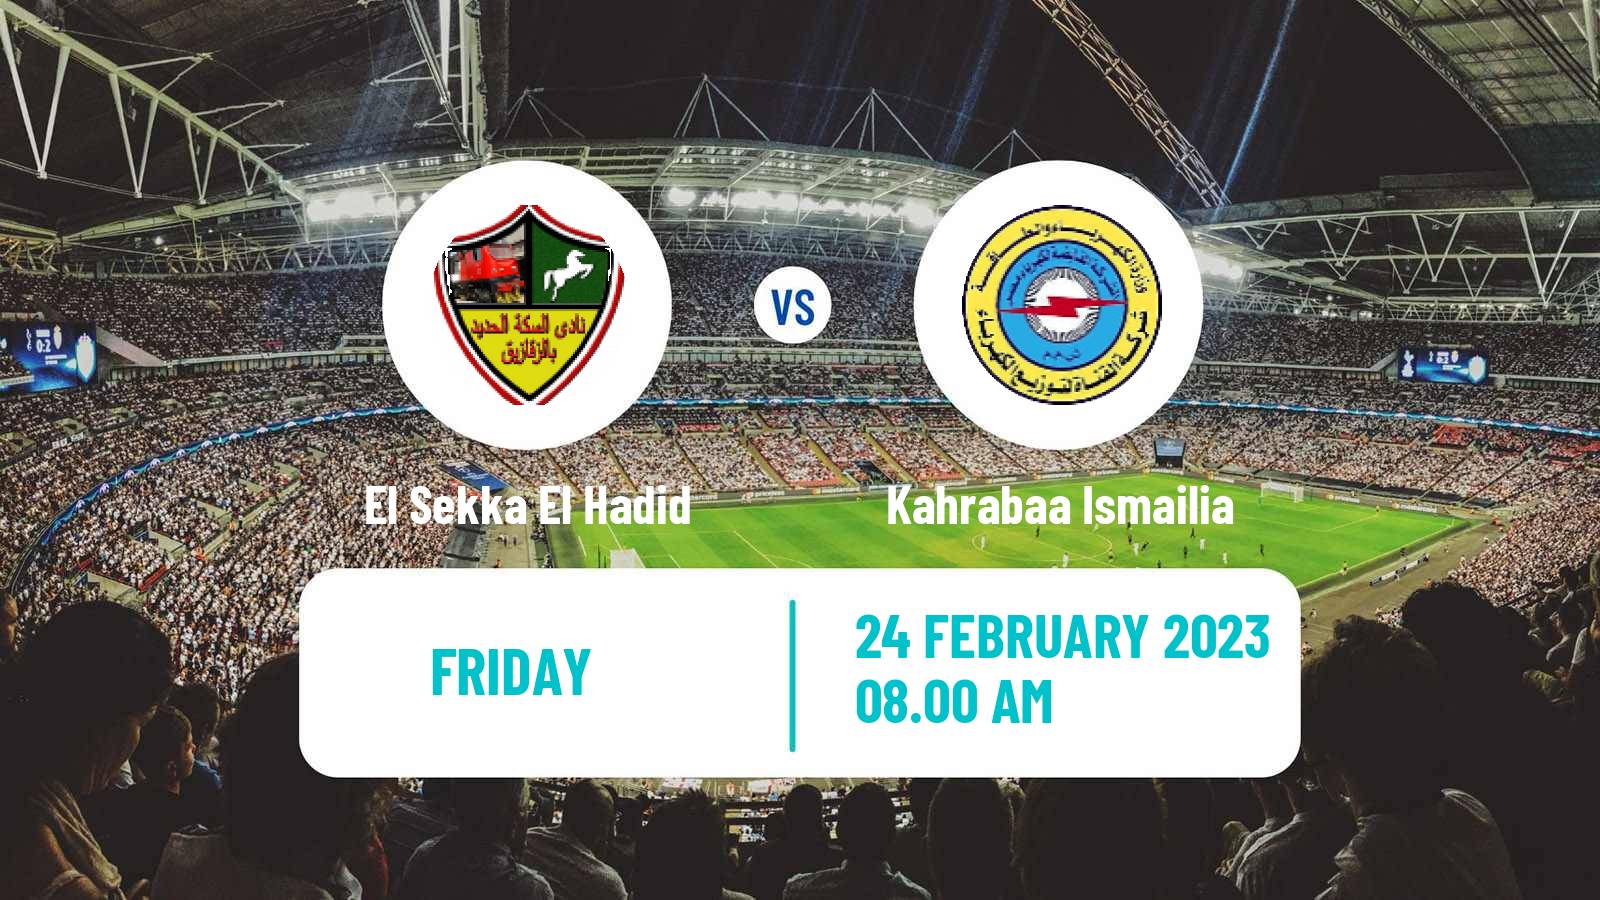 Soccer Egyptian Division 2 - Group B El Sekka El Hadid - Kahrabaa Ismailia